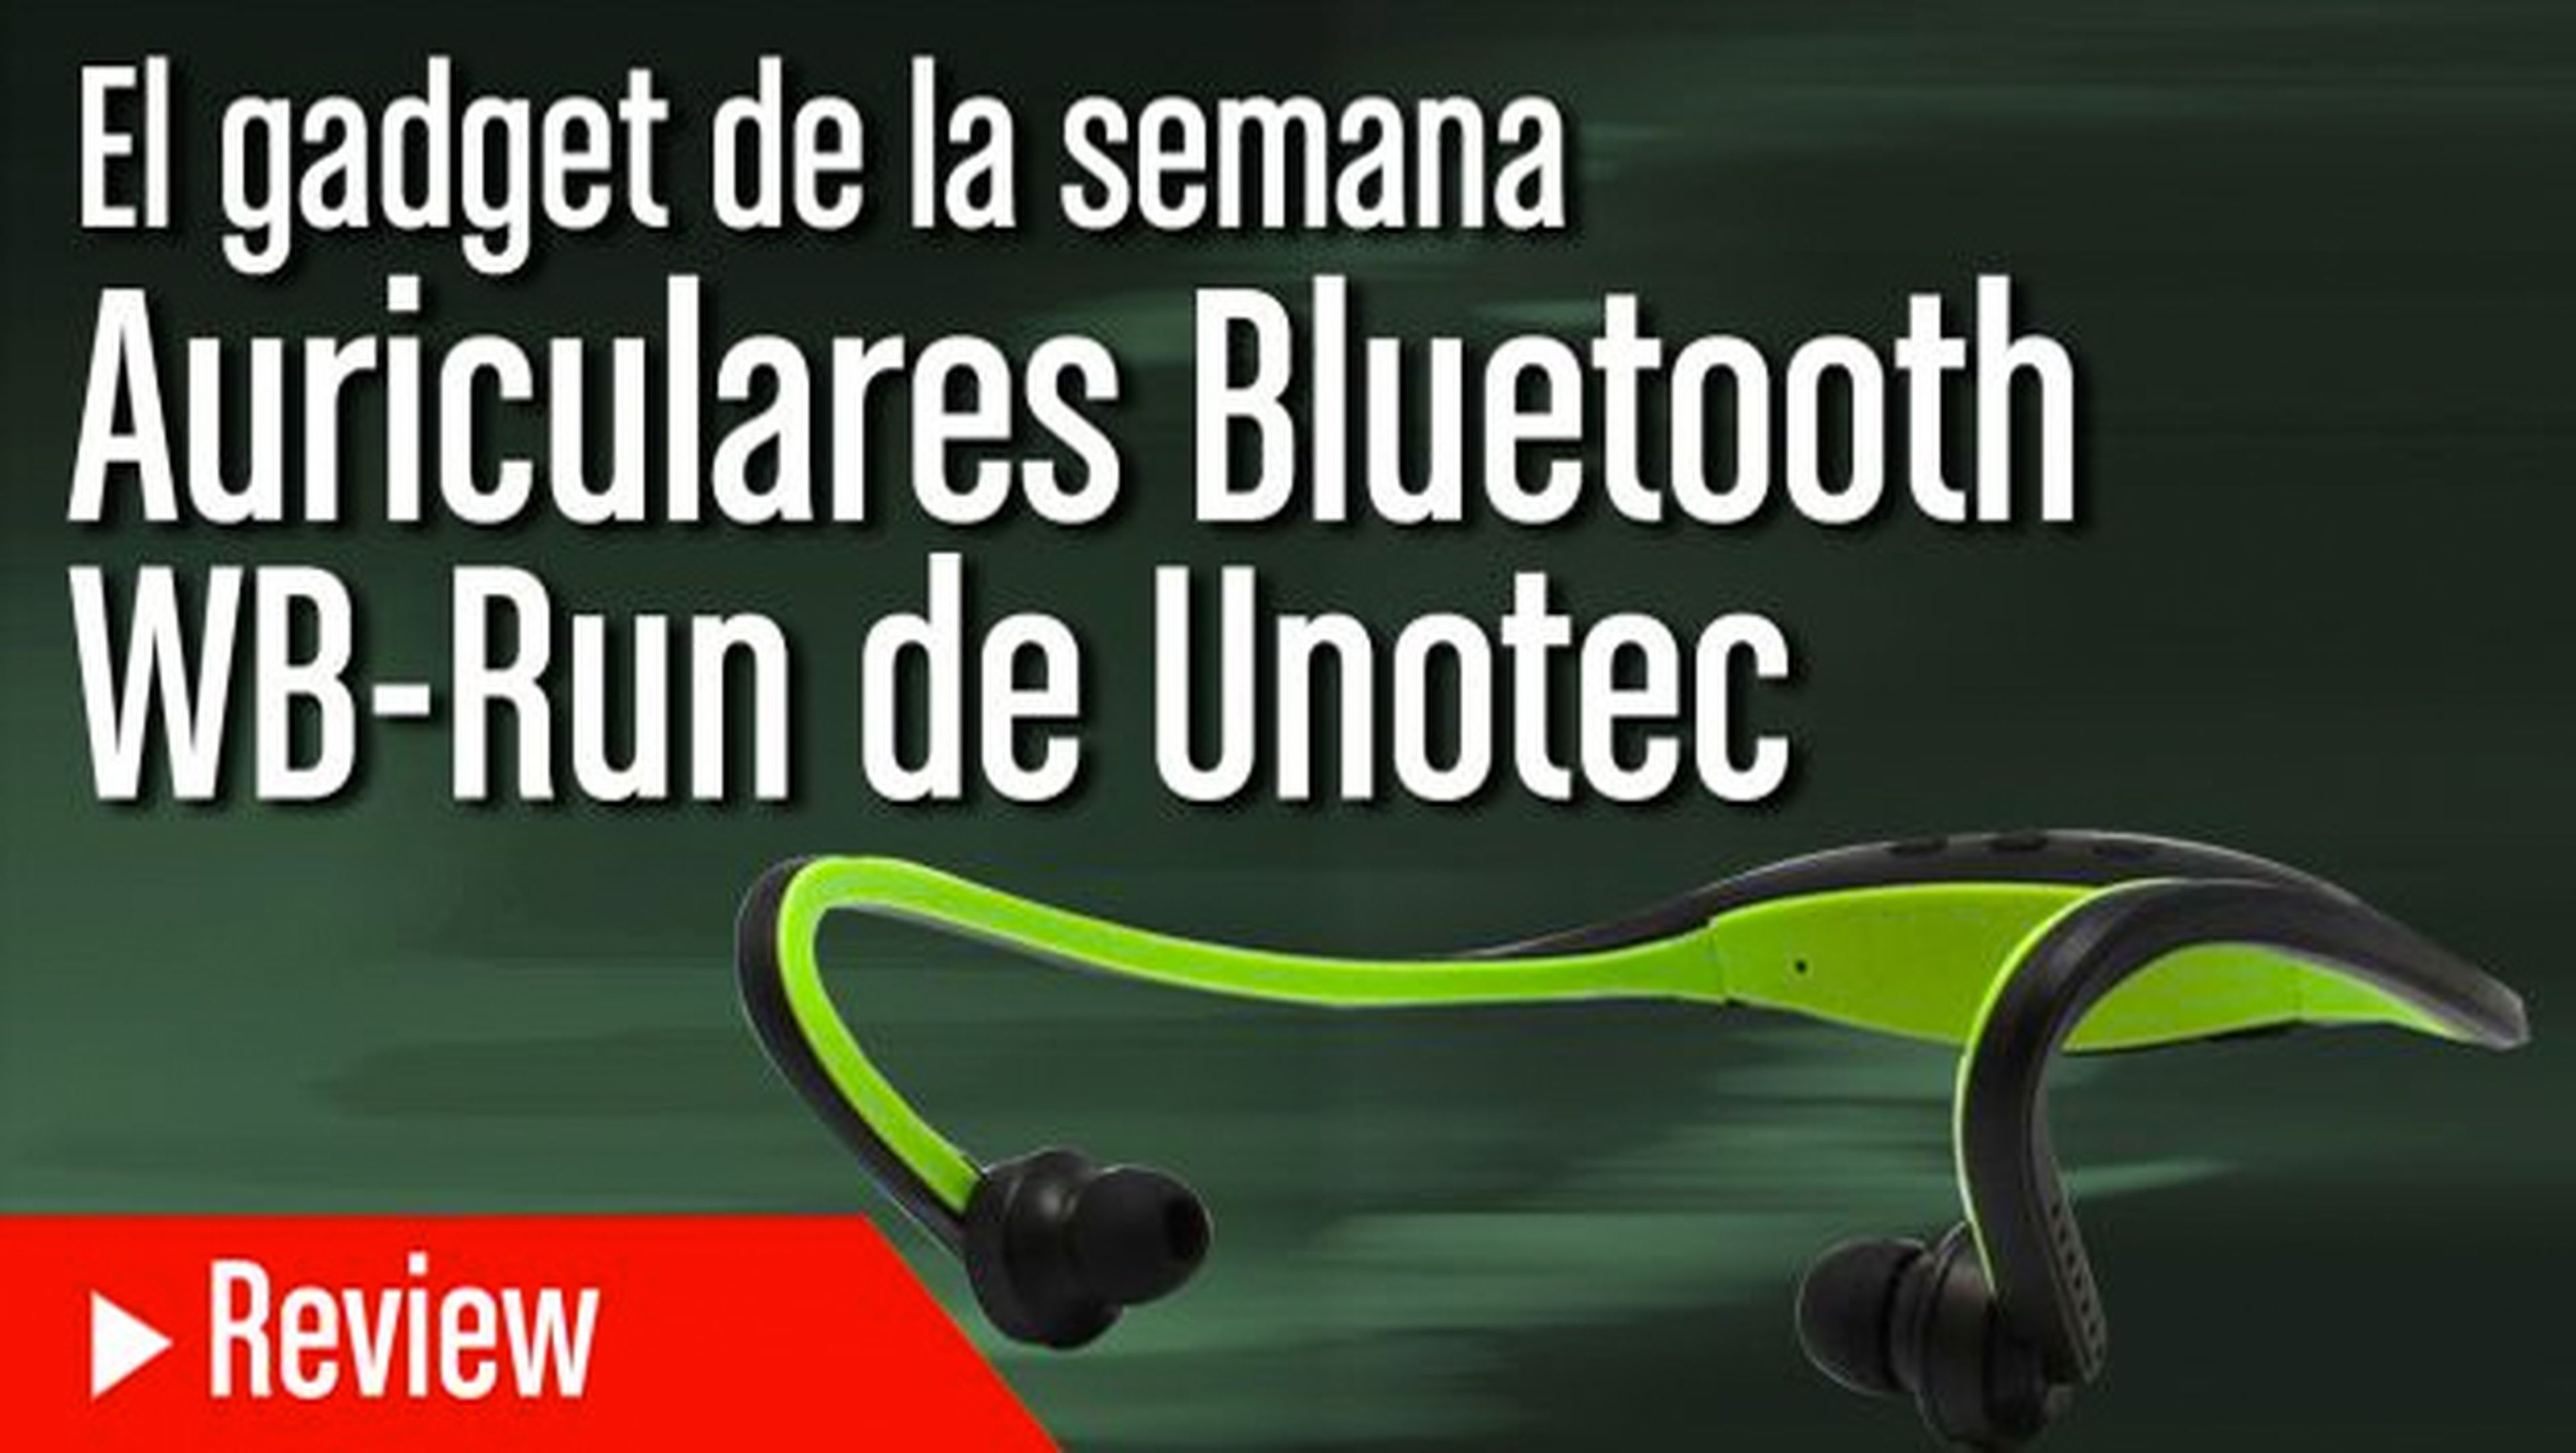 Fuente Punto de partida Generalmente El Gadget de la Semana: Los auriculares Bluetooth de Unotec | Computer Hoy